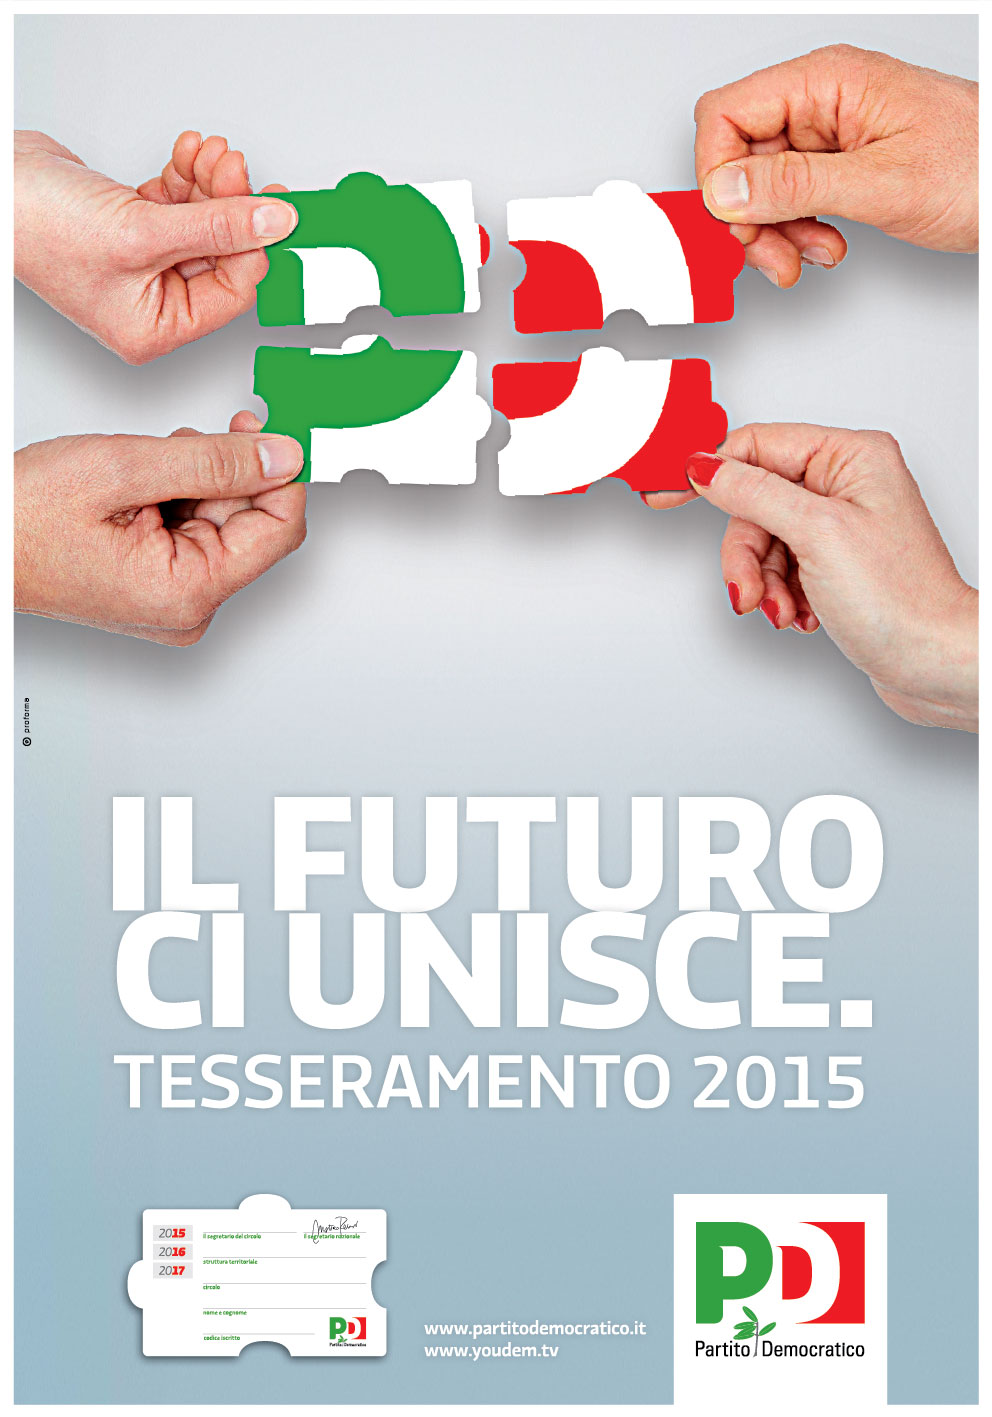 Il-futuro-ci-unisce-Tesseramento-PD-2015